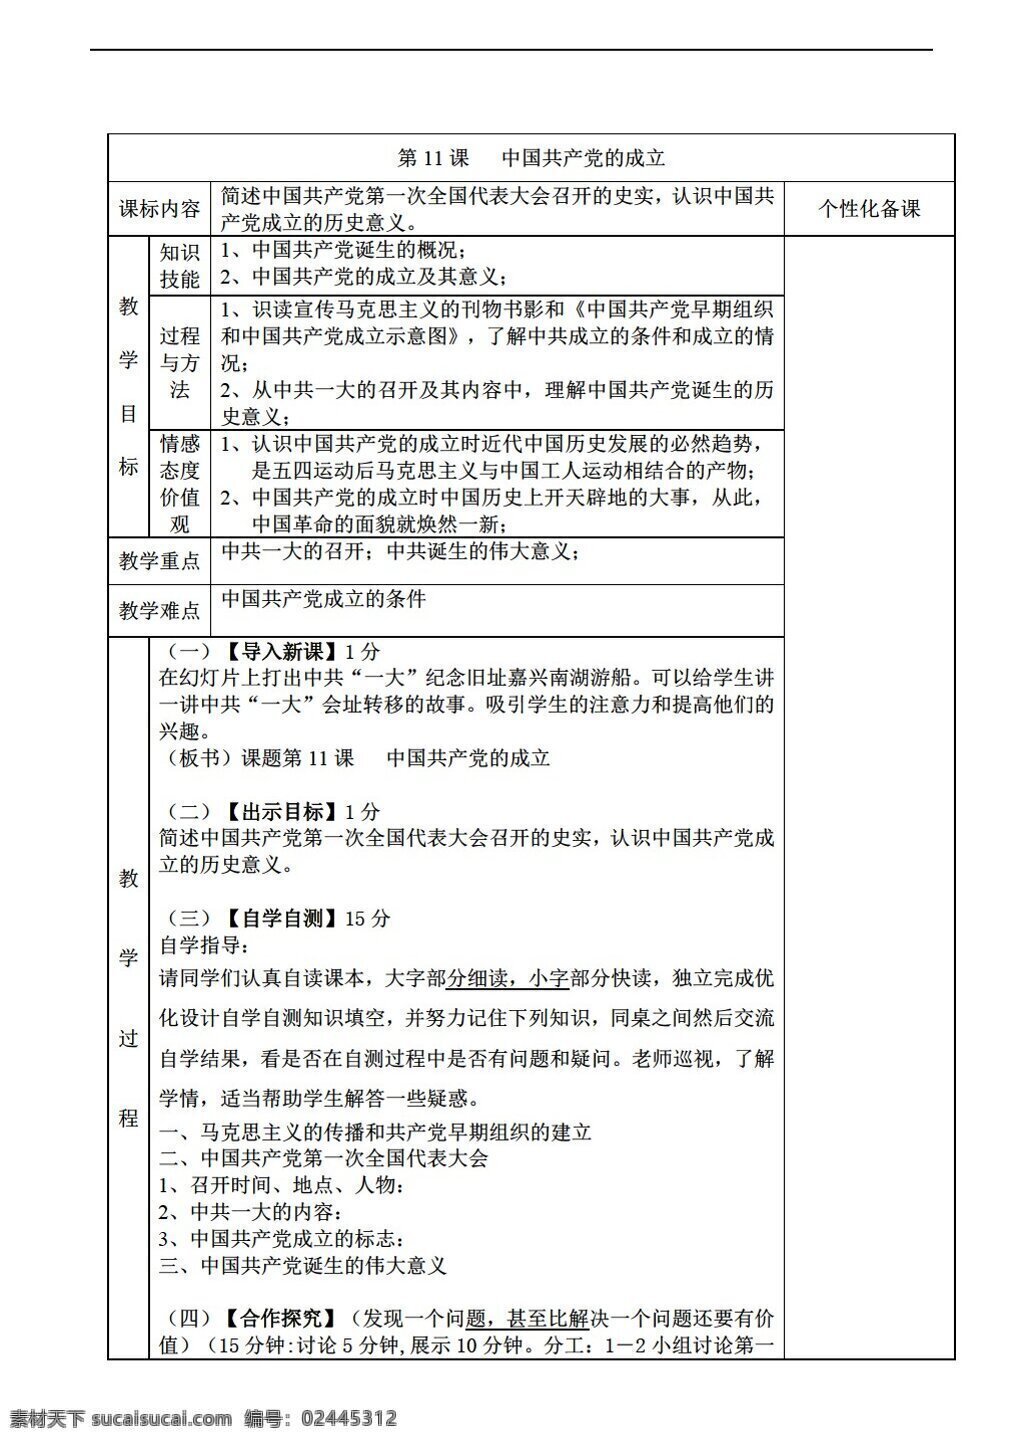 八 年级 上册 历史 课 中国共产党 成立 教案 岳麓版 八年级上册